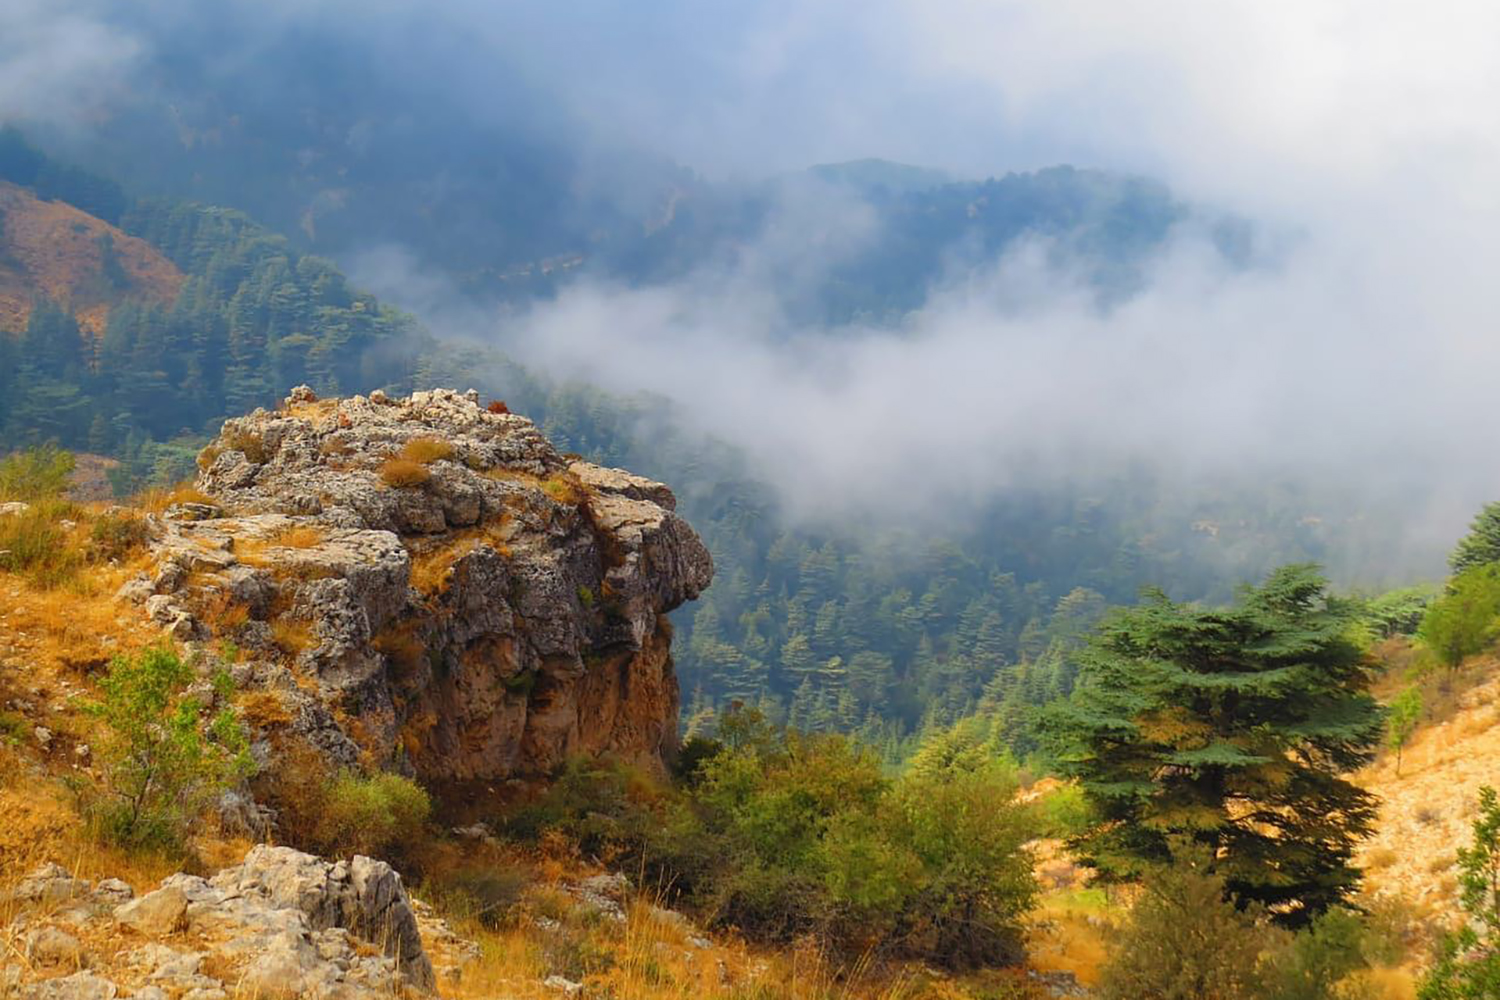 Le site abrite une multitude de plantes rares et endémiques ainsi que les derniers spécimens protégés de pommiers sauvages (pommetiers) au Liban ©Ehden